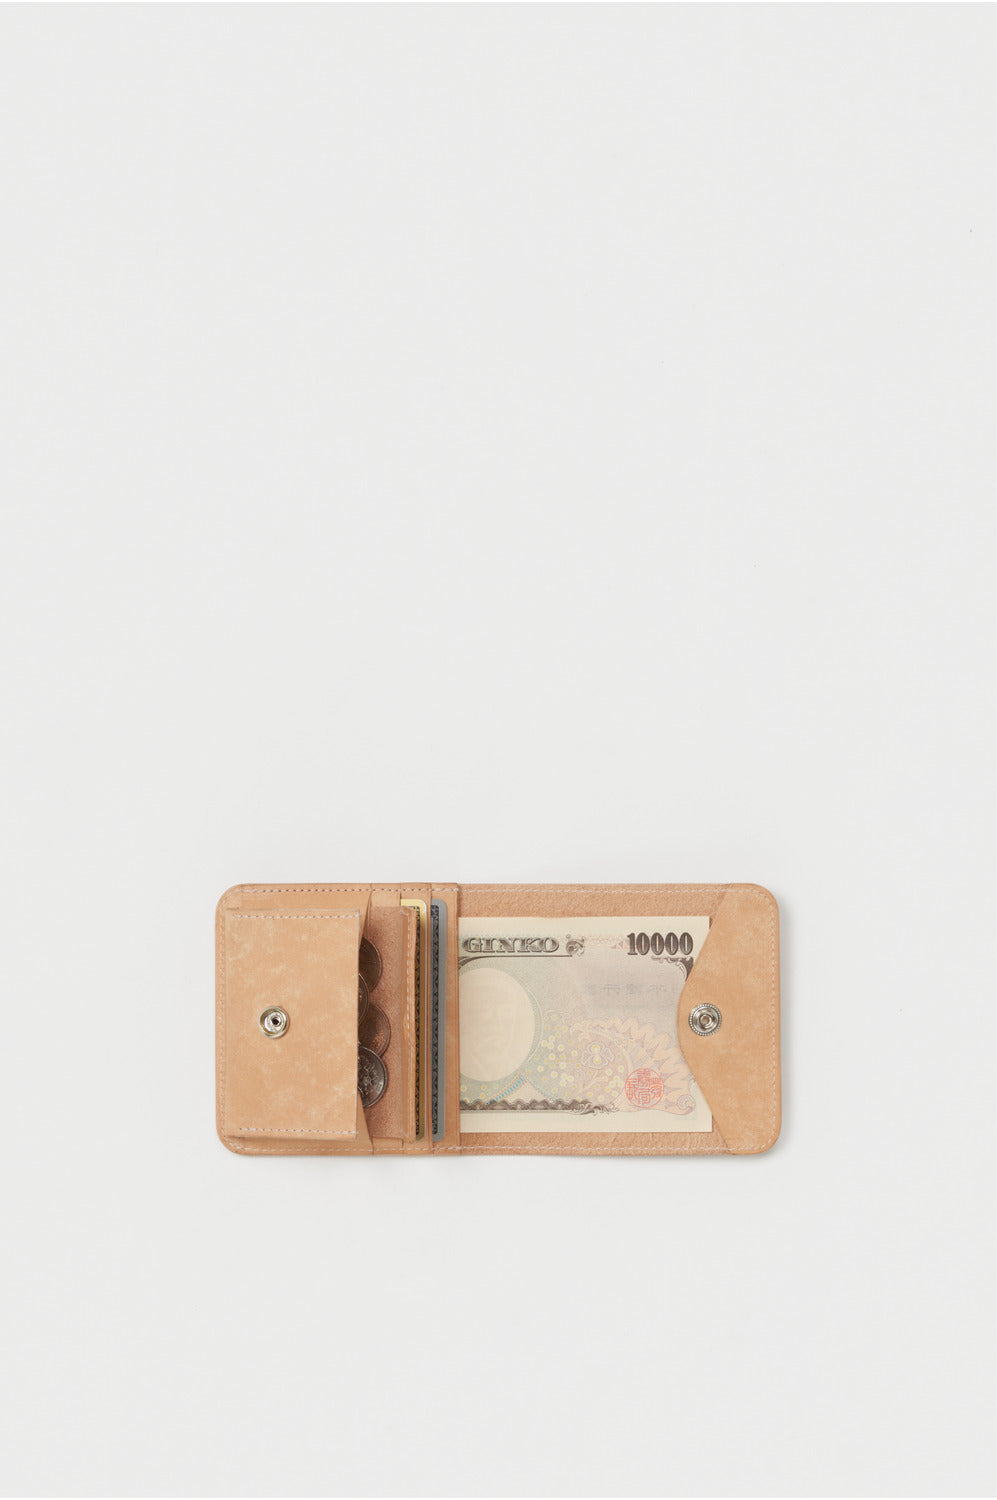 hender scheme money clip(cow leather) - 小物